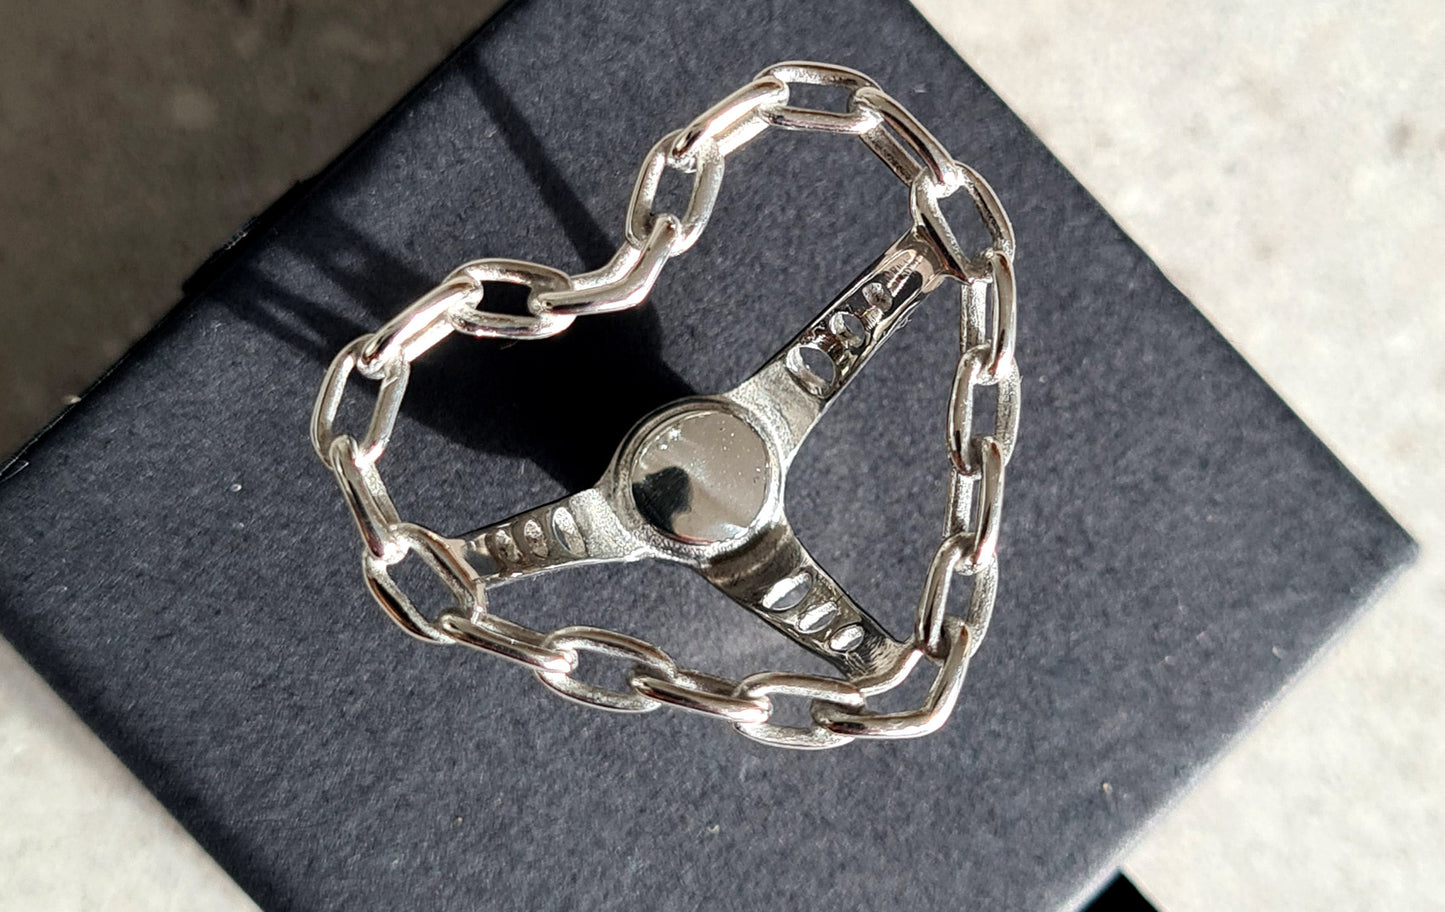 Heart shaped Steel Chain Steering Wheel